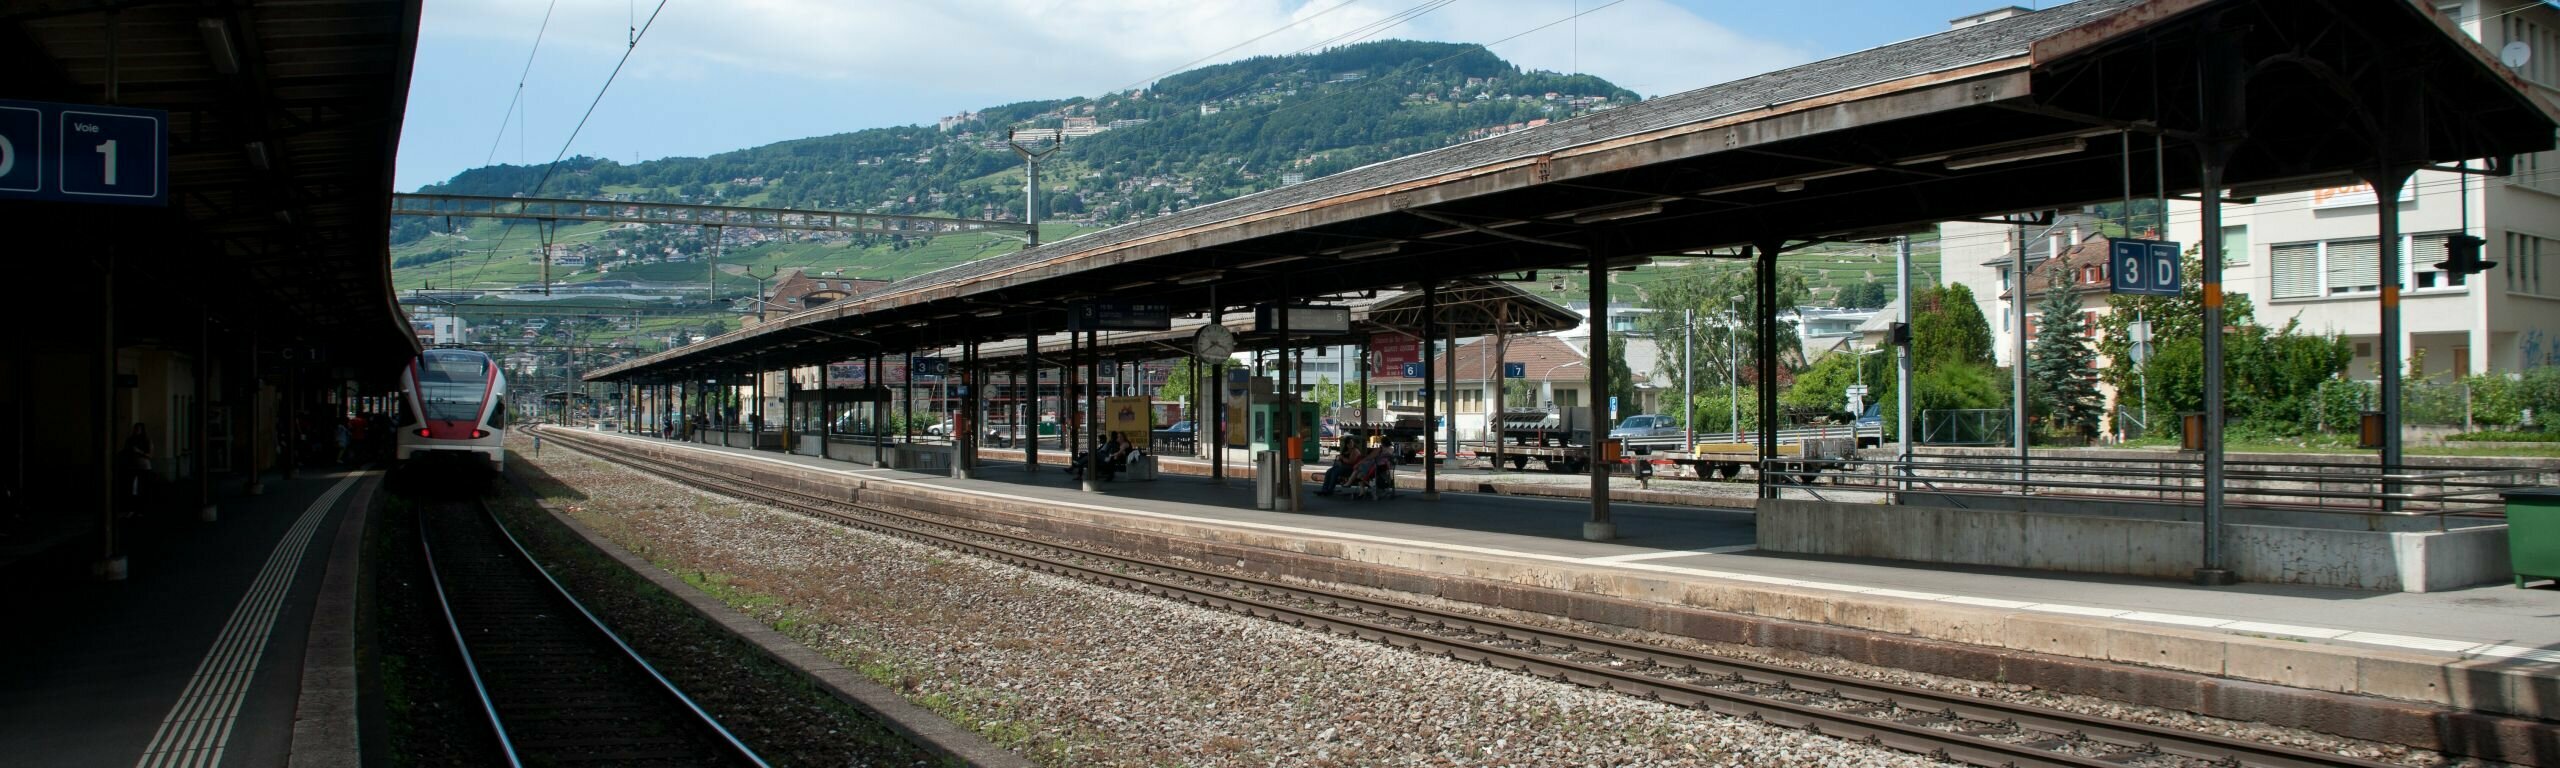 Vue de la gare de Vevey